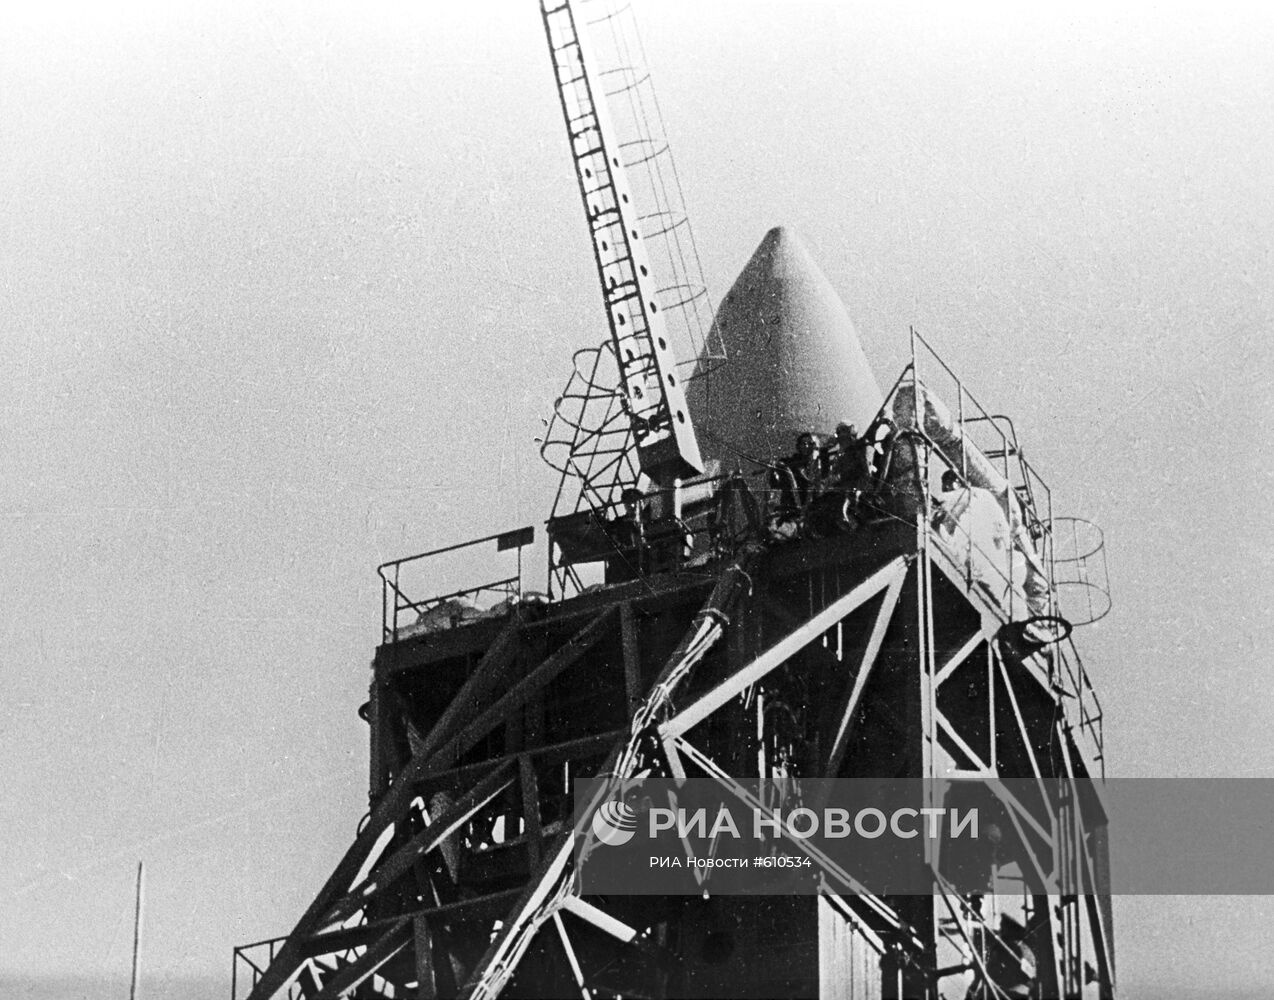 Советский пилотируемый космический корабль "Восход-2" на старте